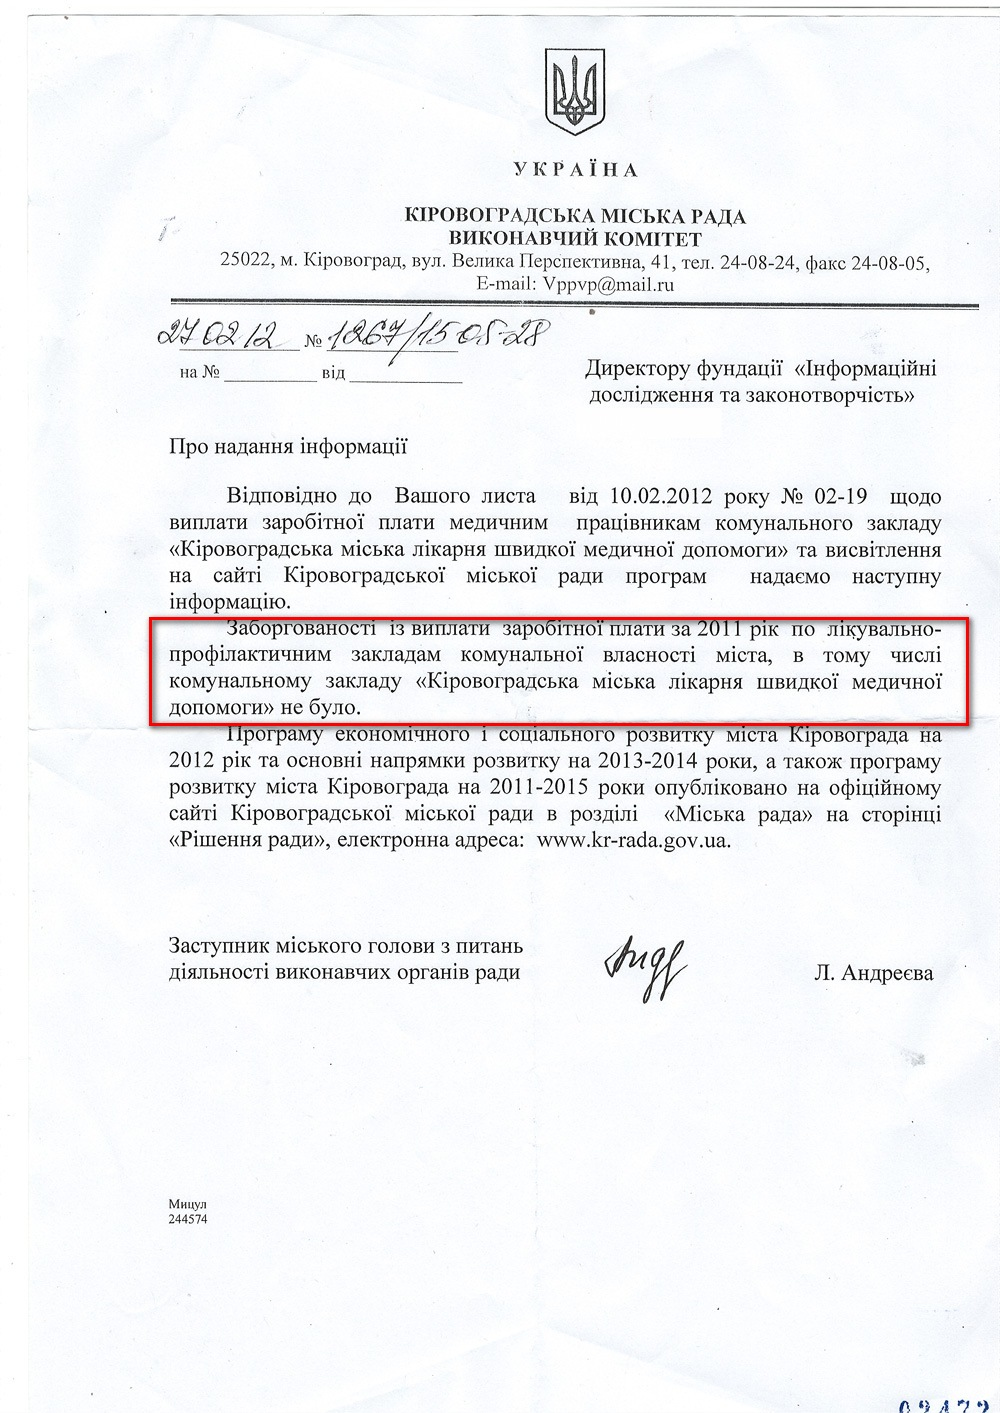 Лист заступника міського голови Кіровограда з питань діяльності виконавчих органів влади Л. Андреєвої